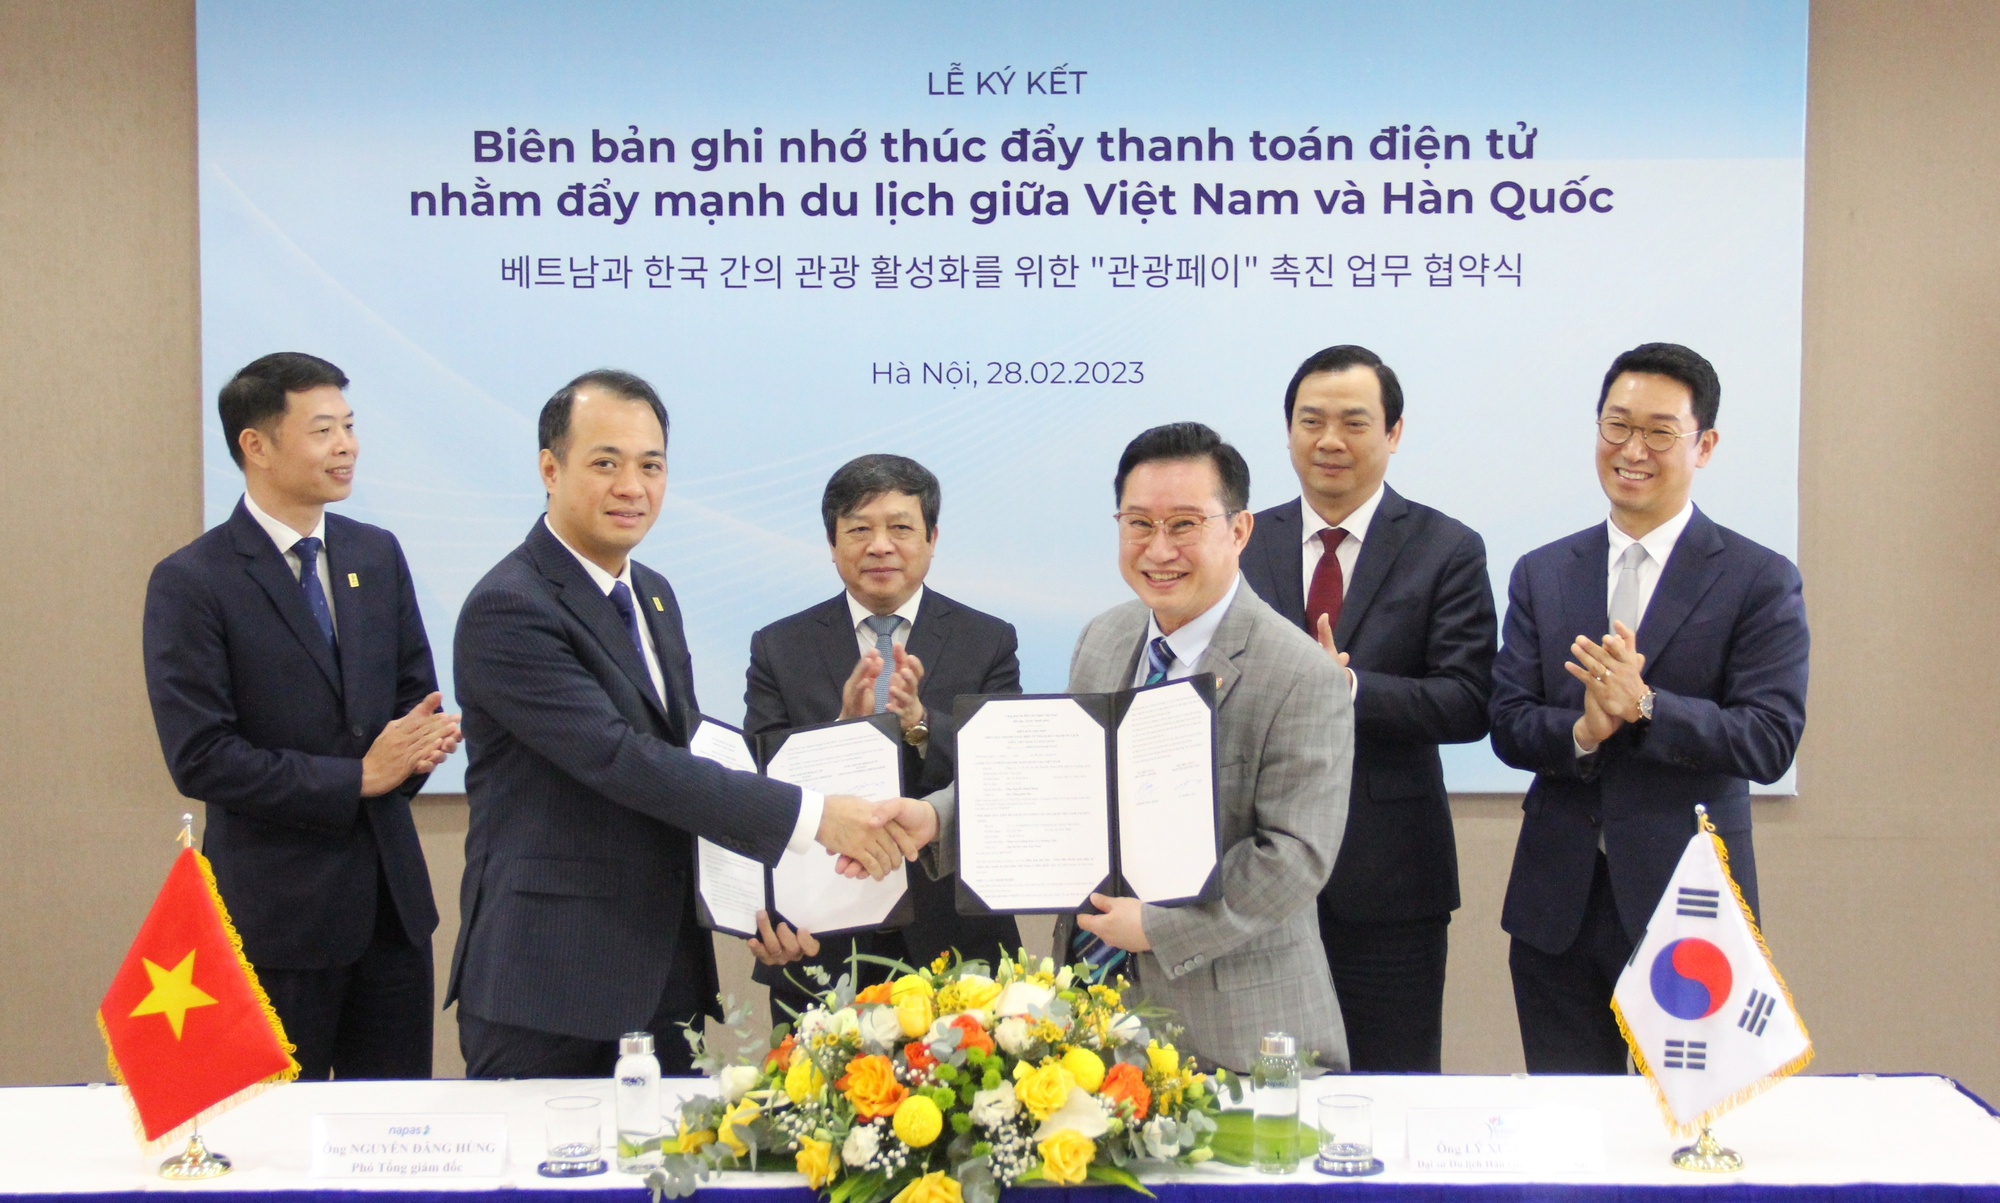 Đẩy mạnh hợp tác du lịch giữa Việt Nam - Hàn Quốc thông qua thanh toán điện tử - Ảnh 2.